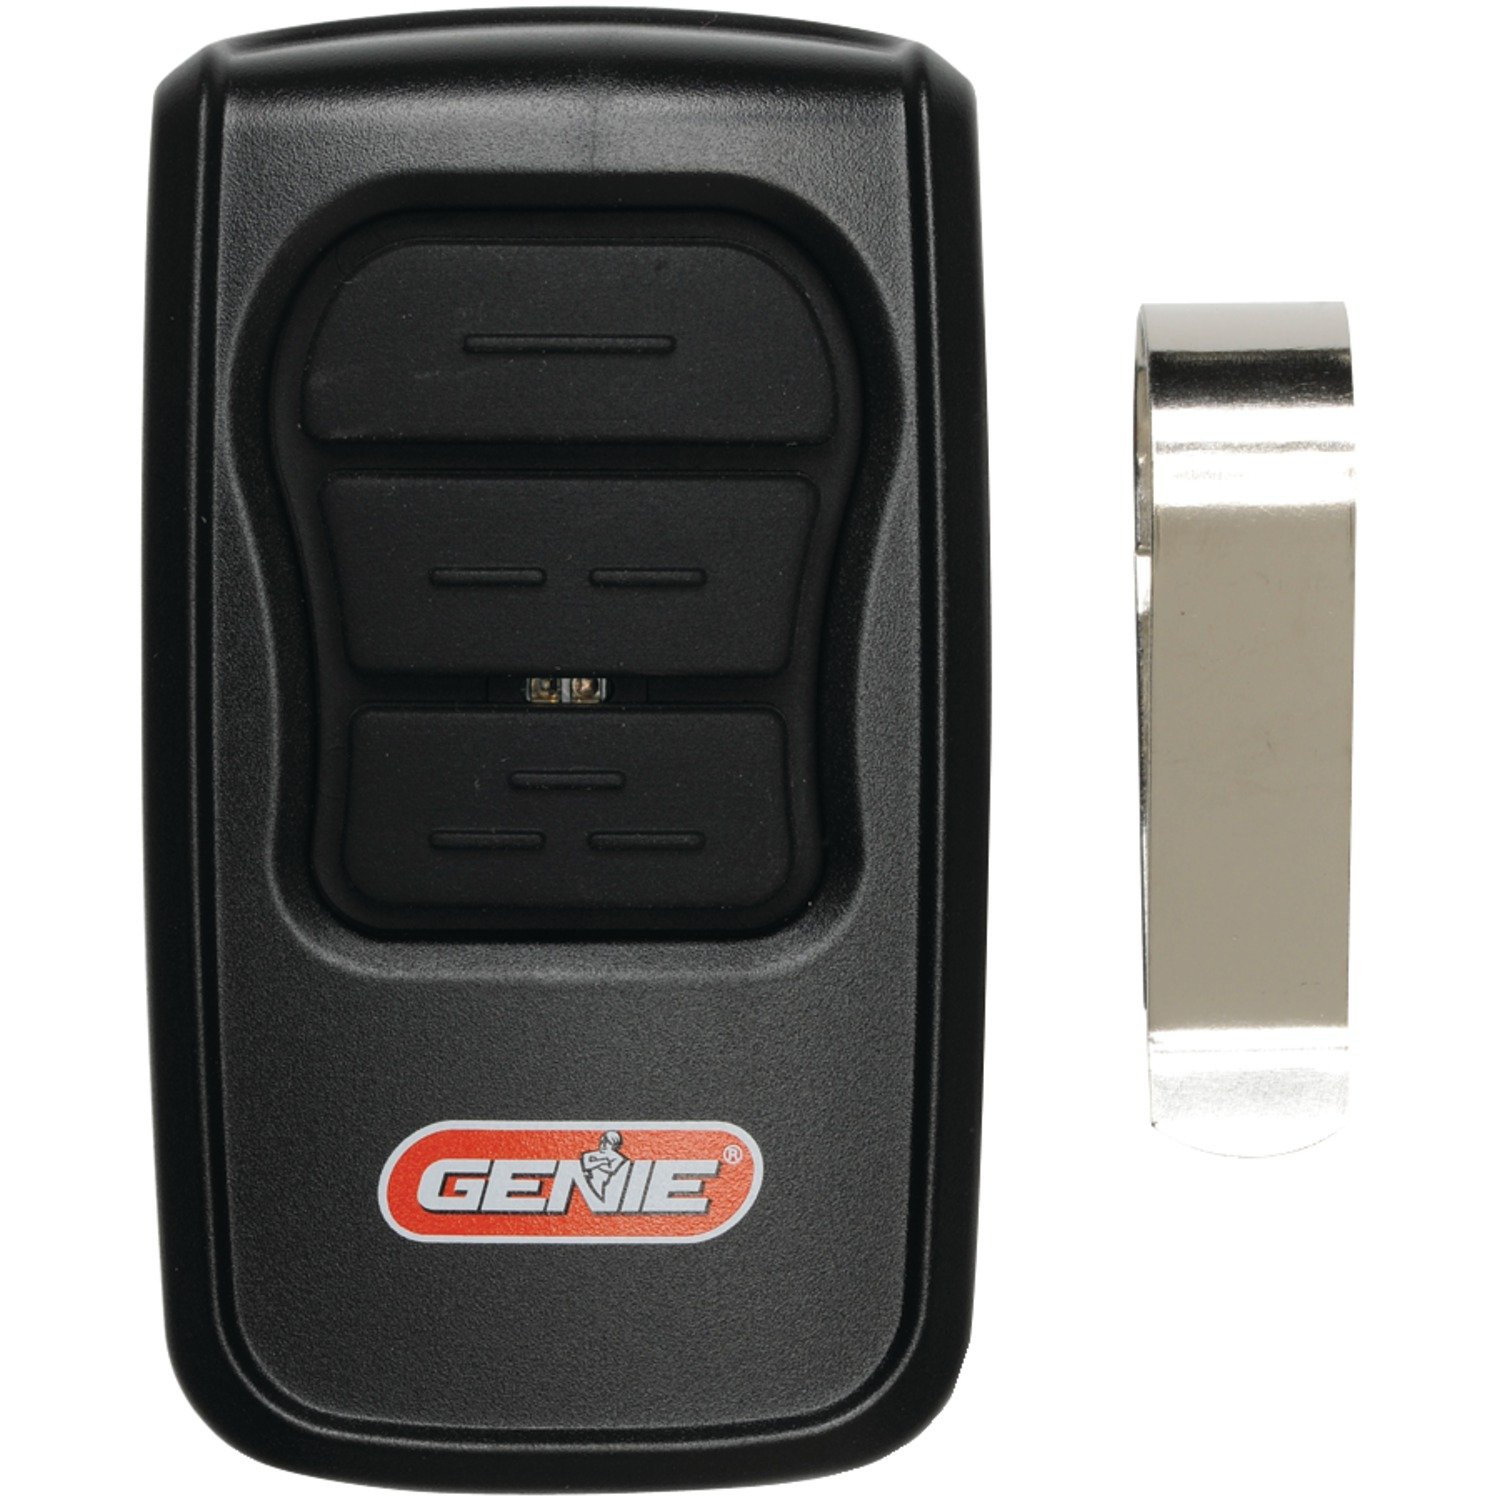 Genie Garage Door Opener Programming
 Genie GM3T R Master 3 Button Remote New Free Shipping